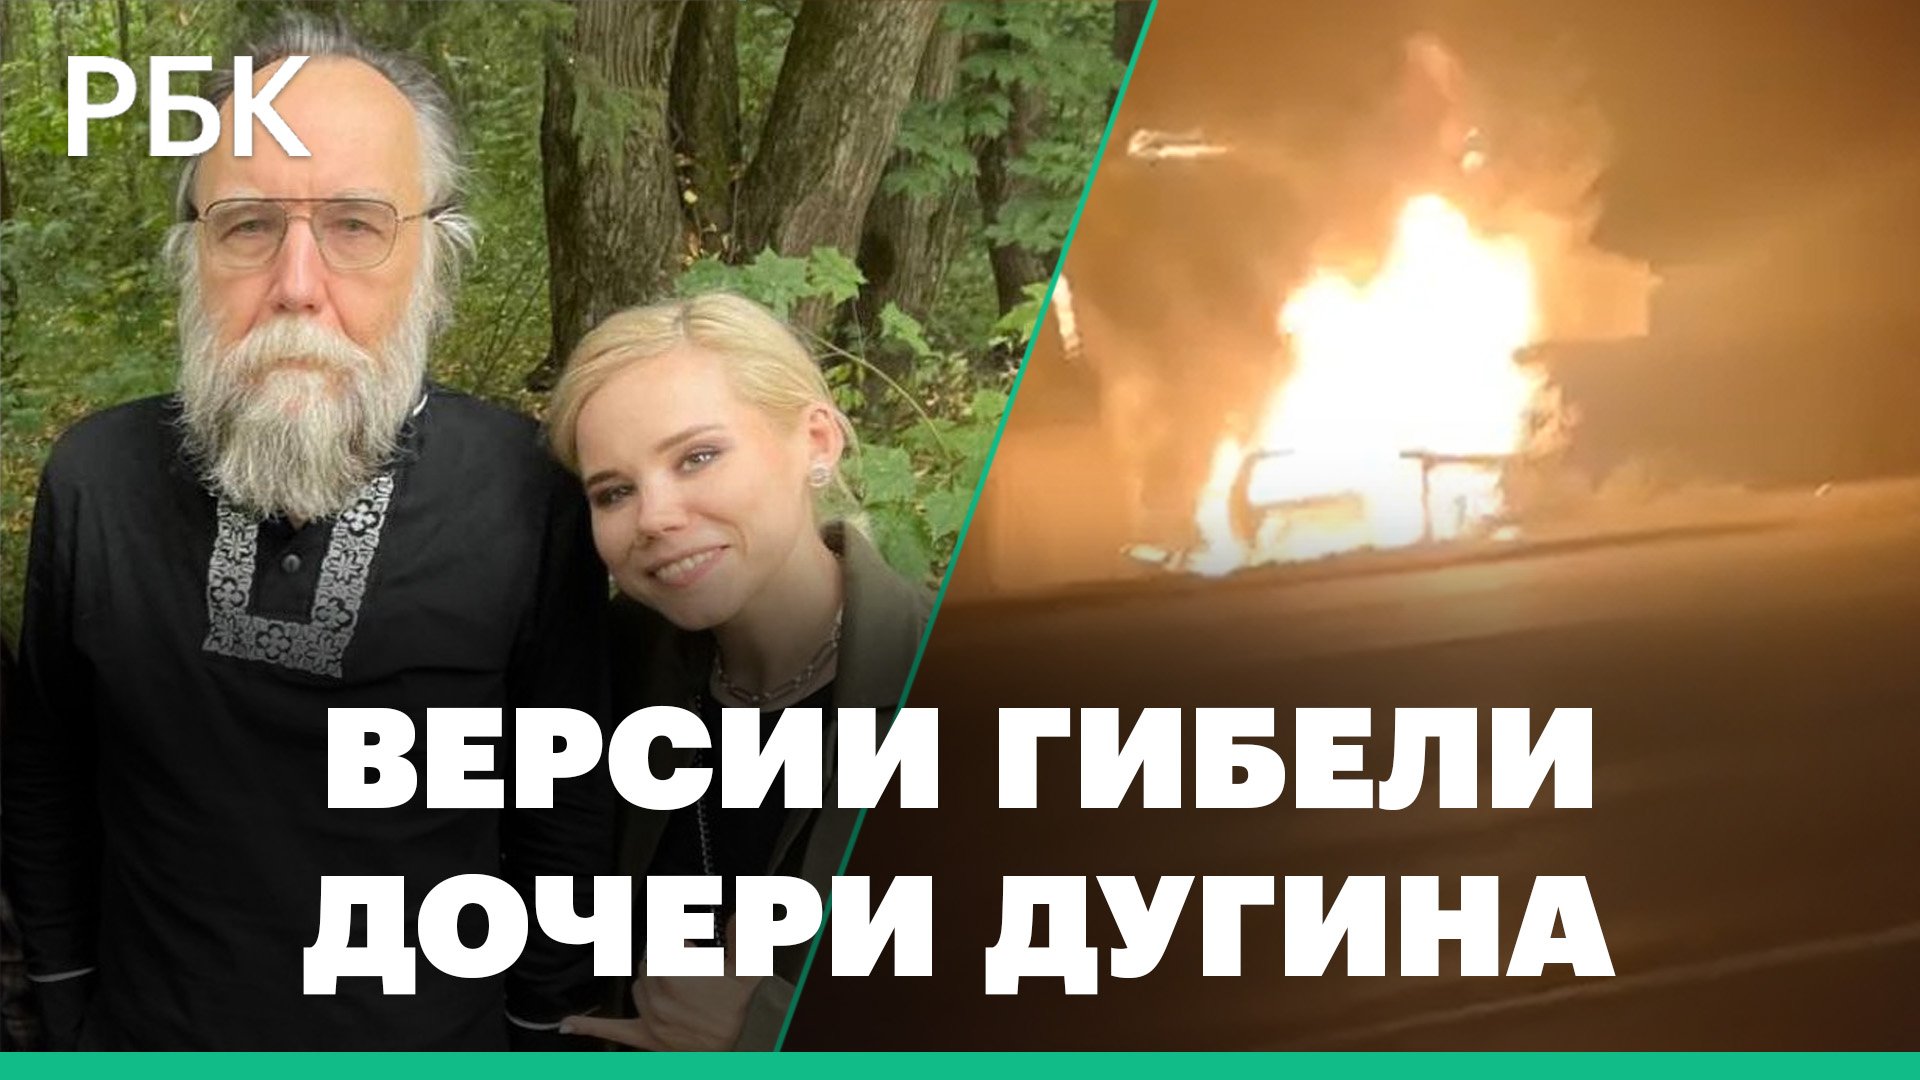 Взрыв автомобиля в Подмосковье: что известно об убийстве дочери философа Александра Дугина